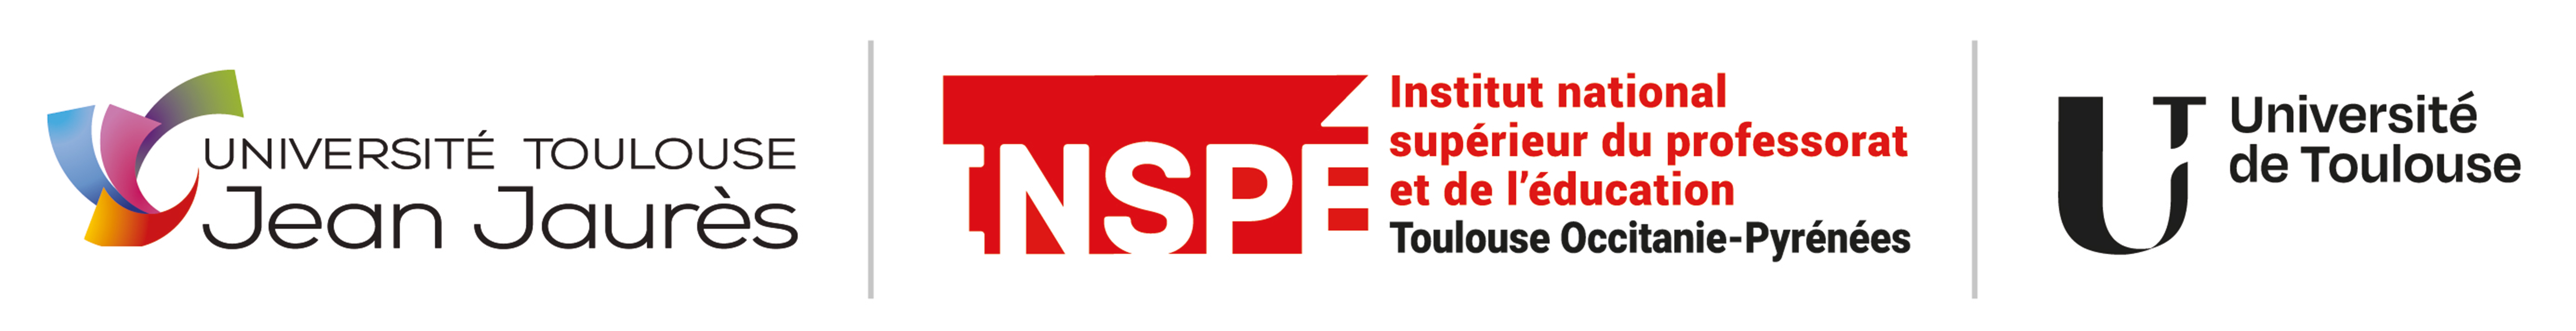 Logos de l'UT2J, de l'INSPE et de l'Université de Toulouse